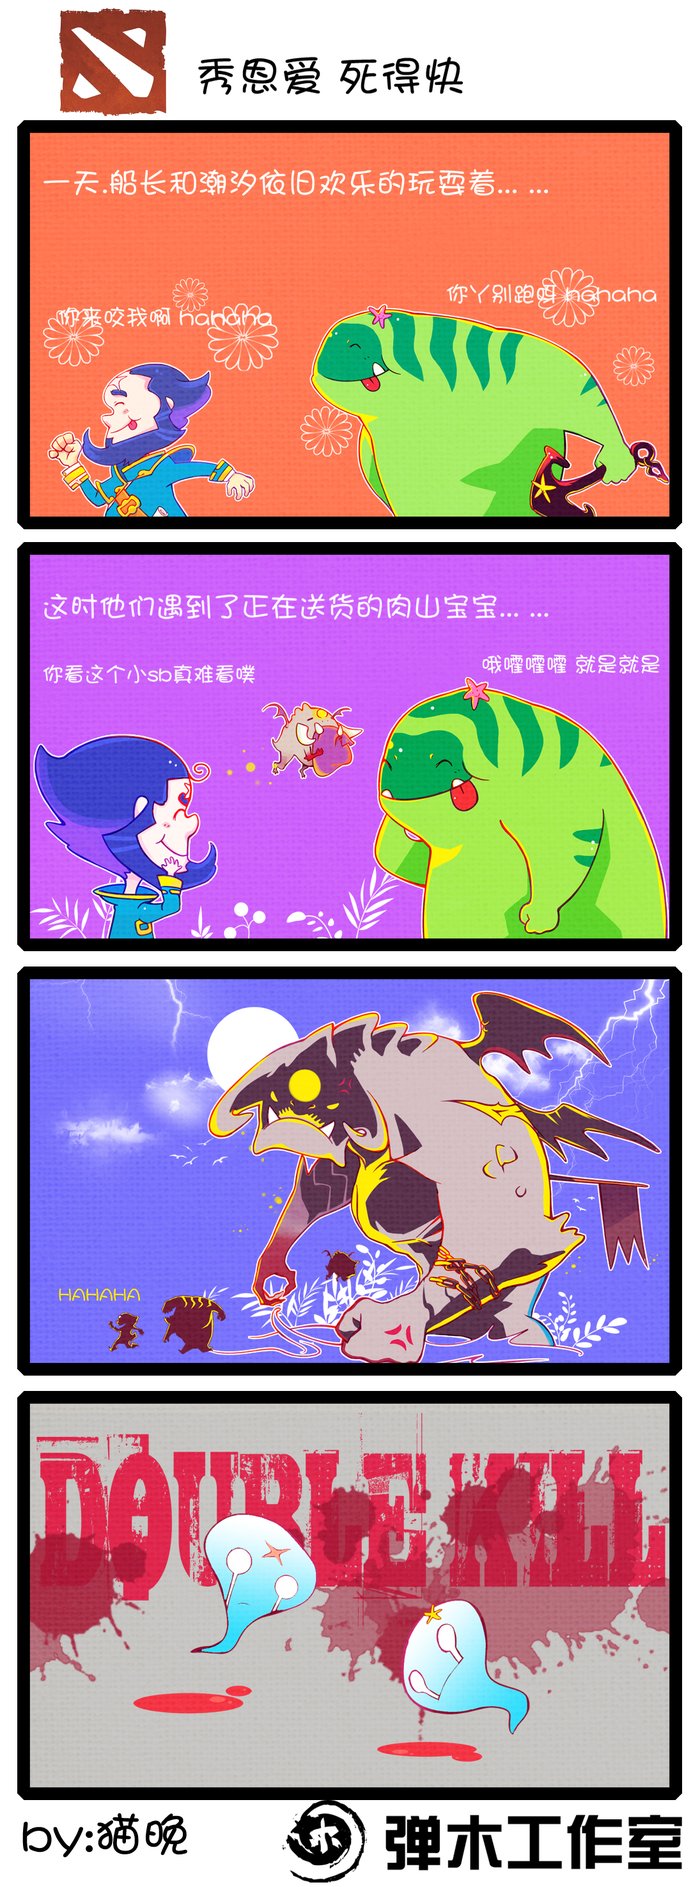 英雄卖萌秀 DOTA2全新爆笑四格漫画乐翻天